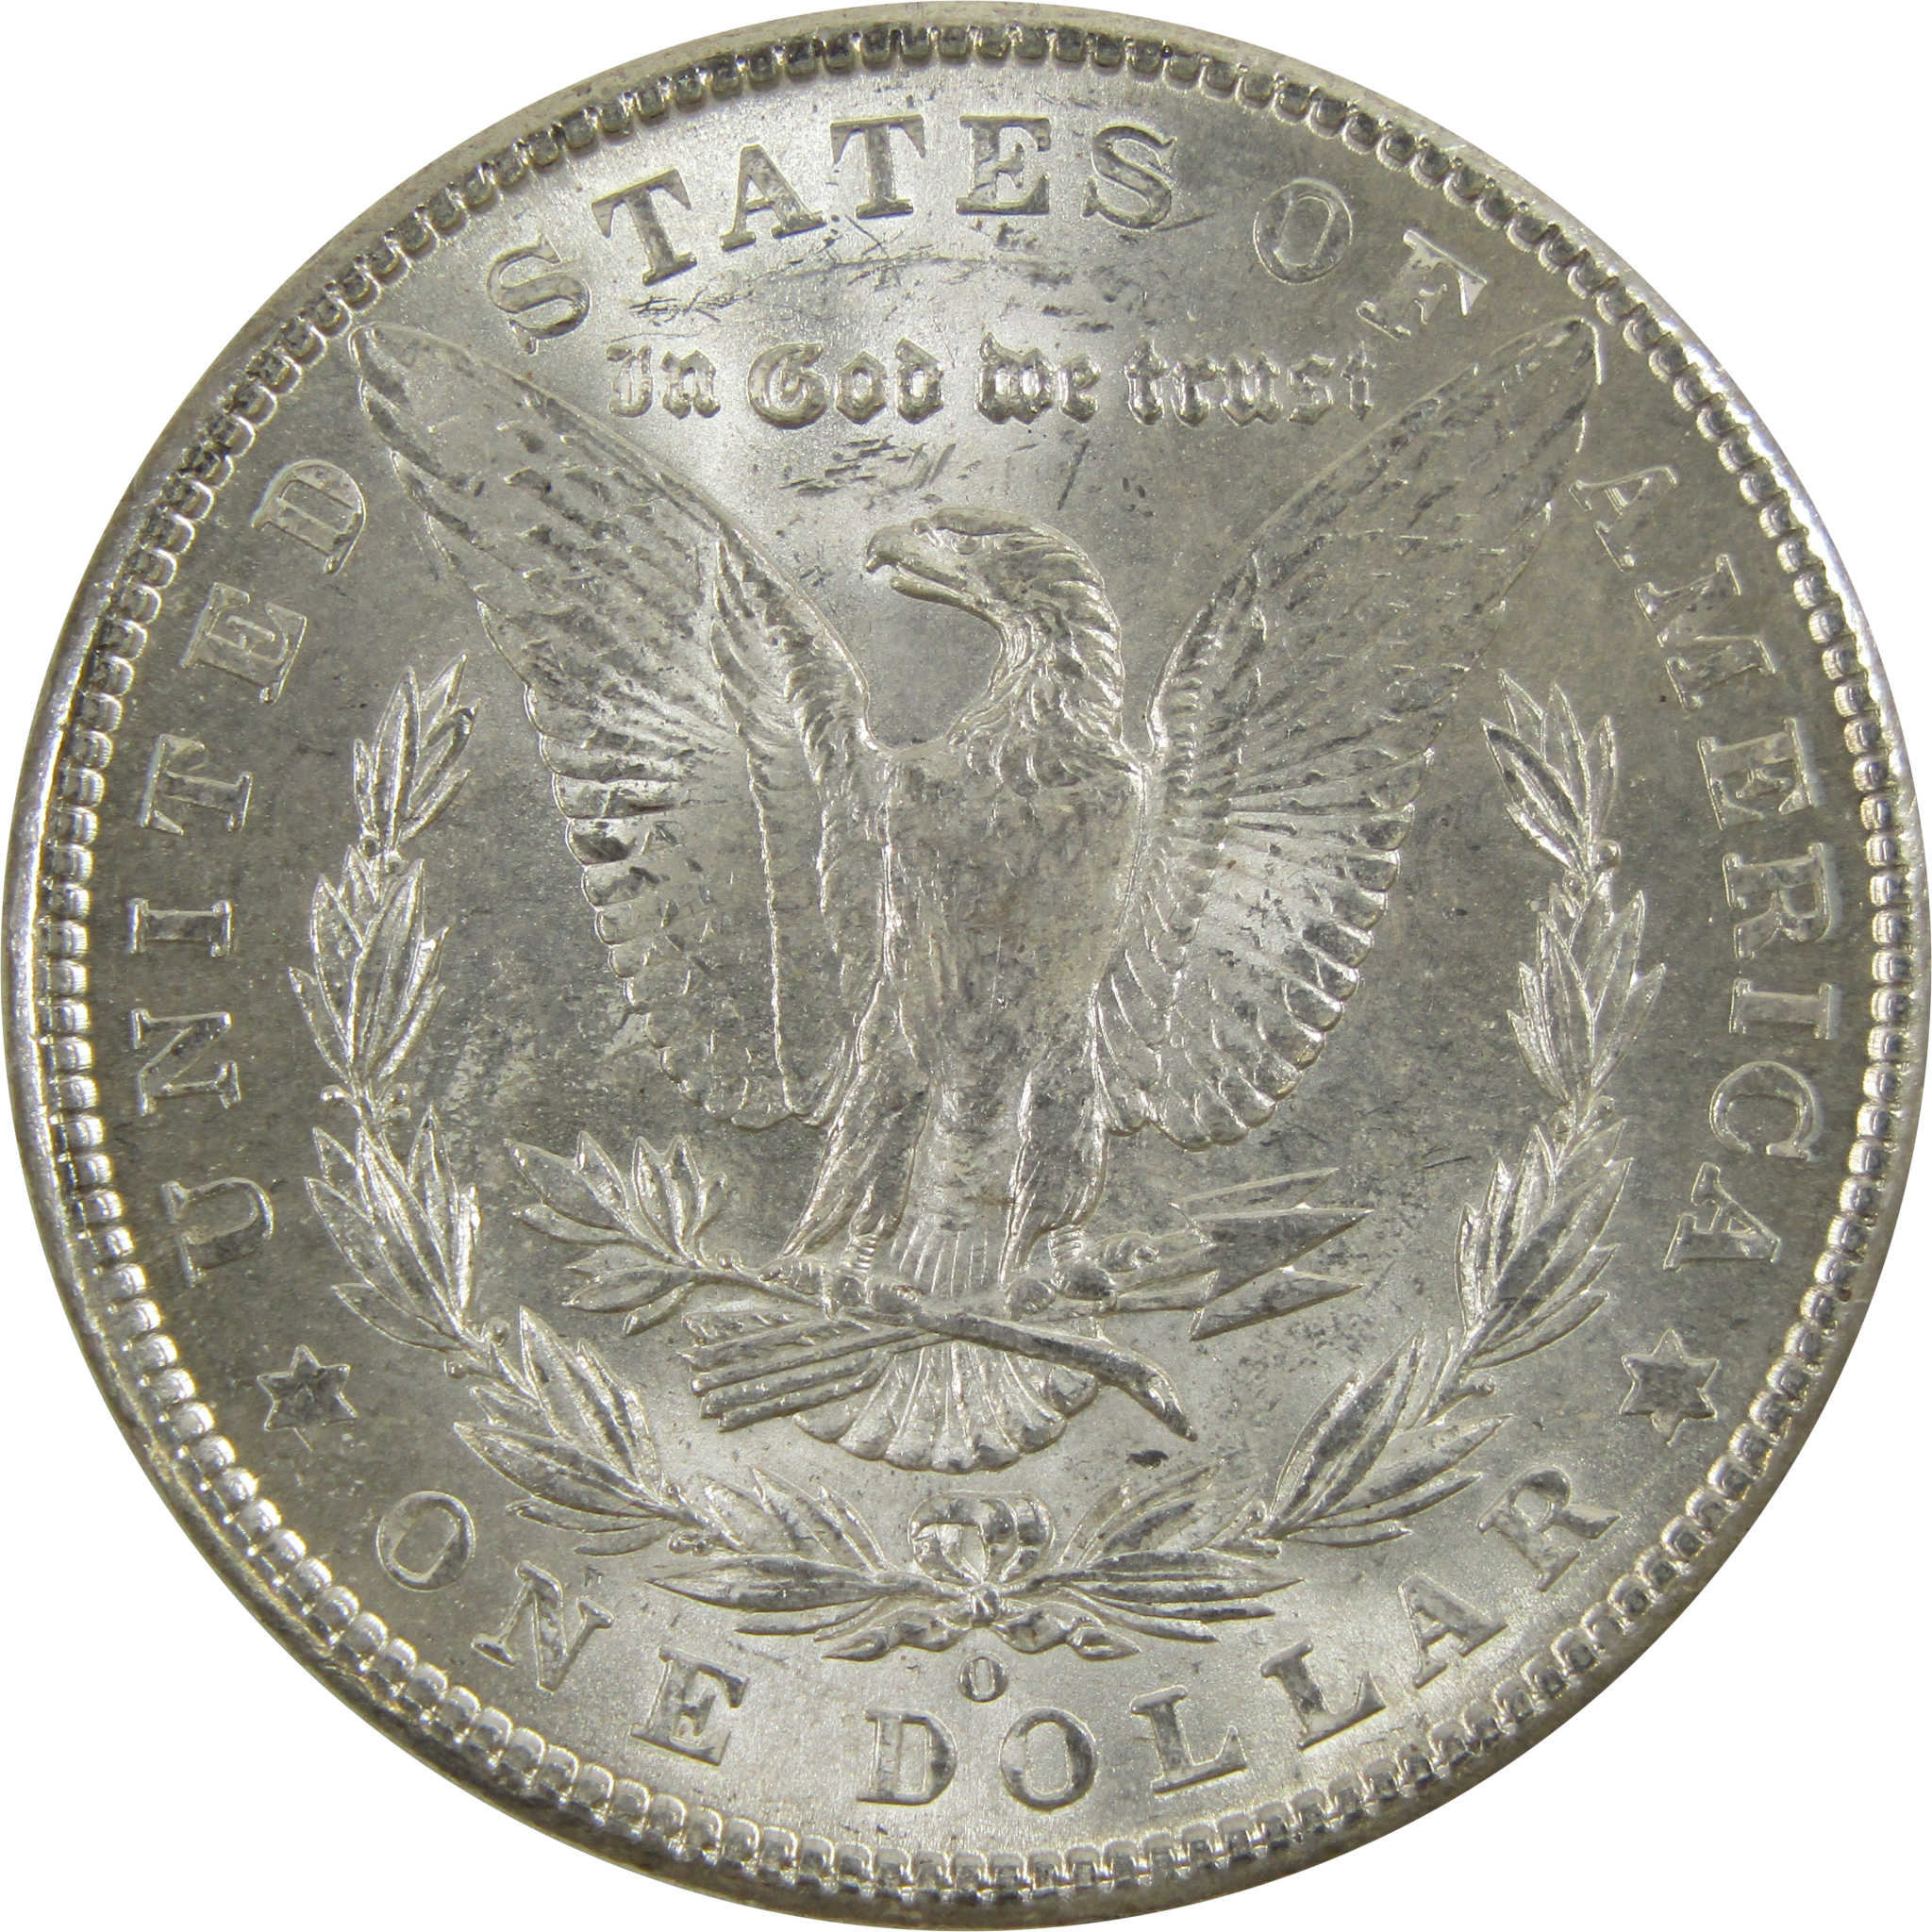 1902 O Morgan Dollar BU Uncirculated 90% Silver $1 Coin SKU:I5210 - Morgan coin - Morgan silver dollar - Morgan silver dollar for sale - Profile Coins &amp; Collectibles